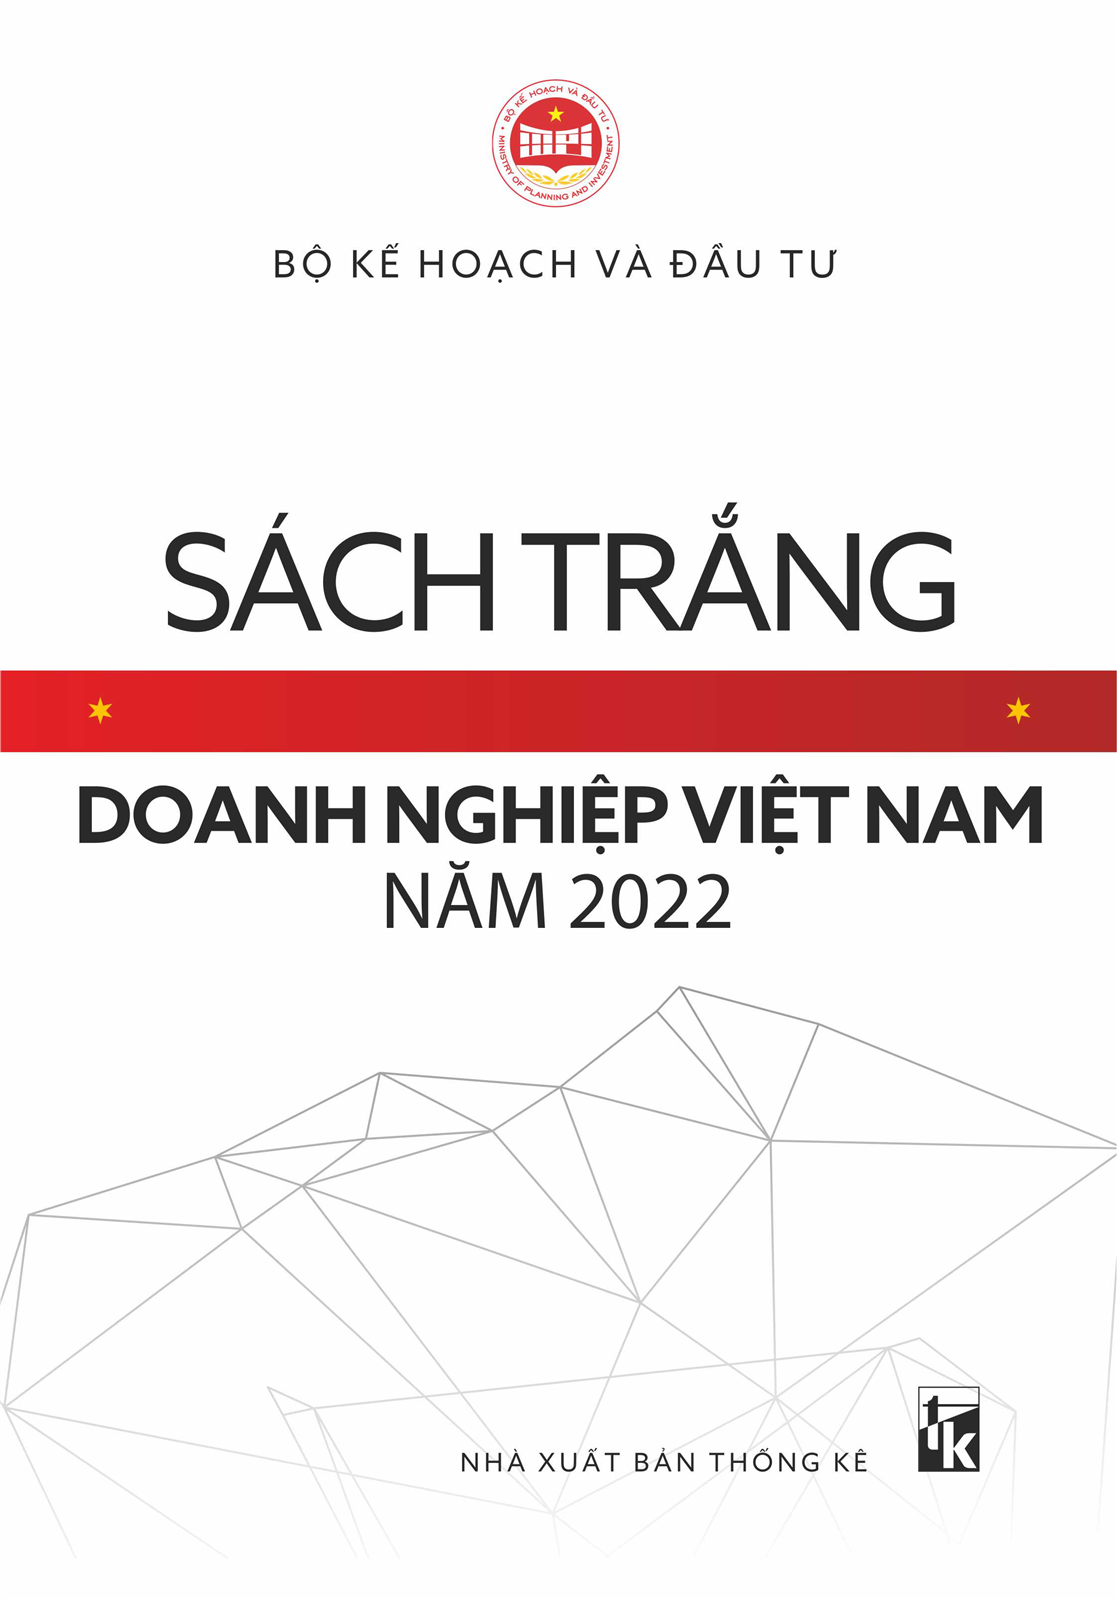 Sách trắng doanh nghiệp Việt Nam năm 2022